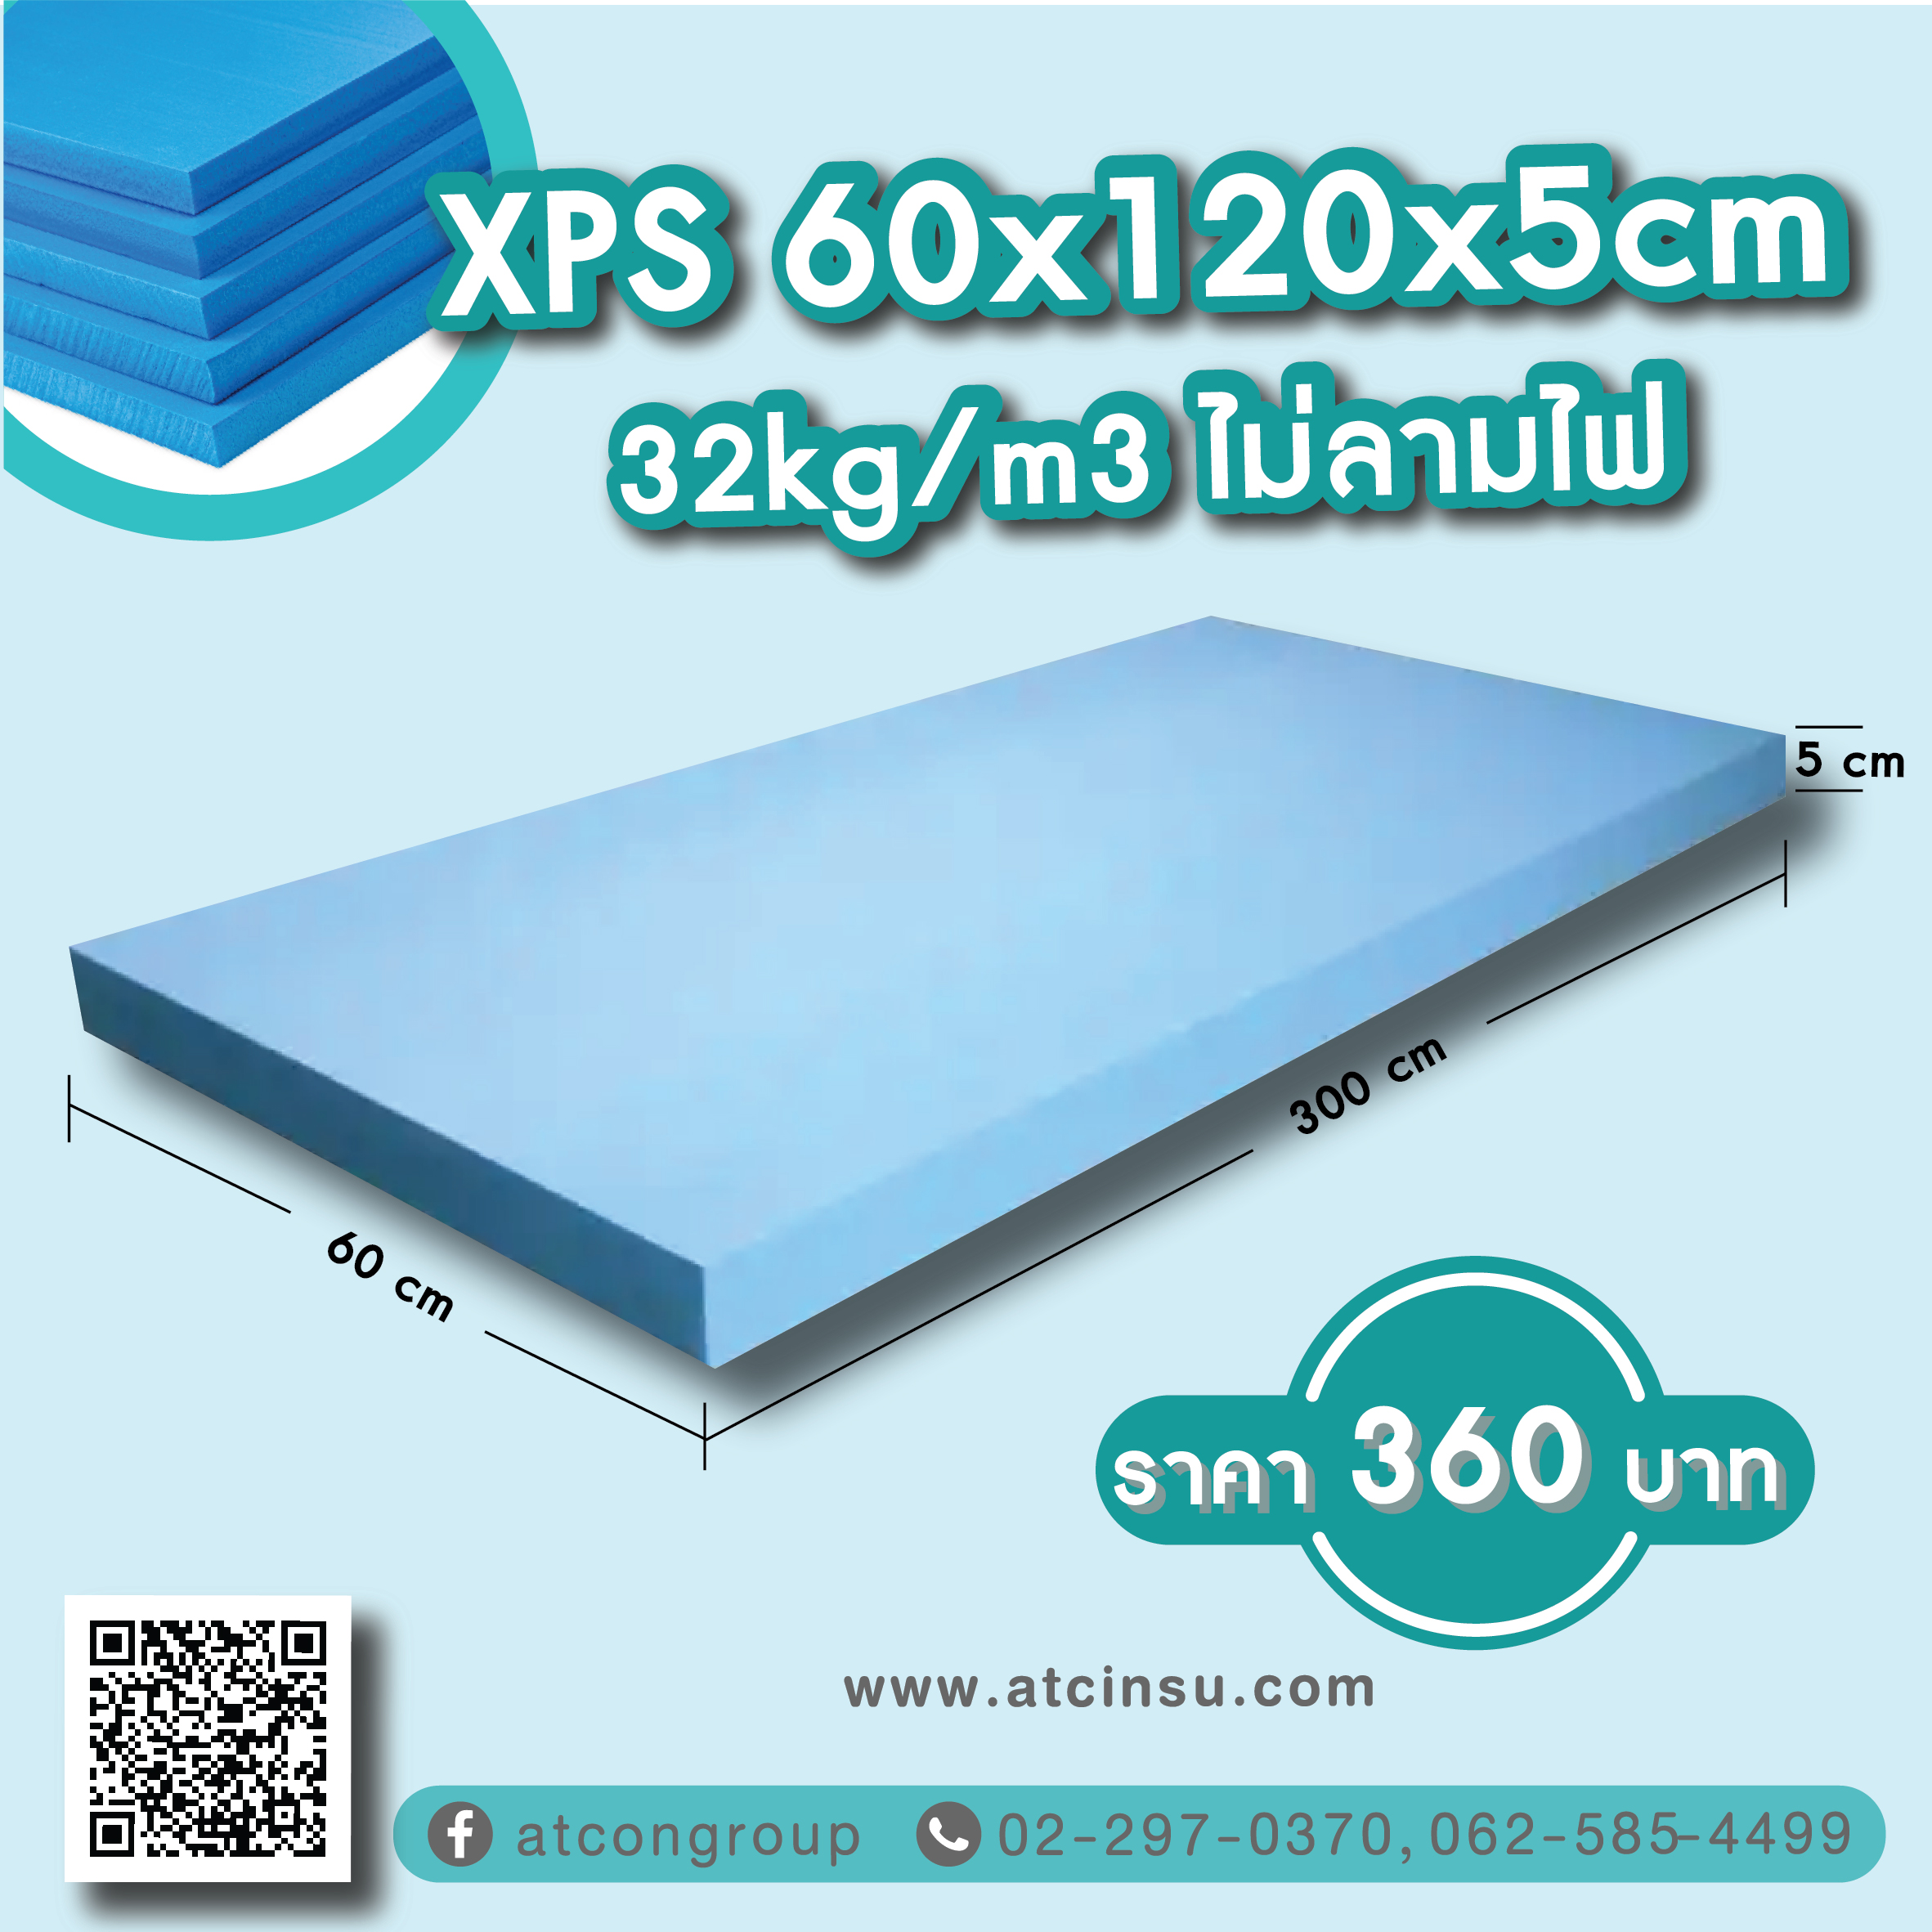 XPS 60 x 120 x 5cm 32kg/m3 ไม่ลามไฟ ราคา 360 บาท โพลีสไตรีนอัดรีด (XPS) XPS โฟมบอร์ด XPS (โพลีสไตรีนอัด) ทำจากโพลีสไตรีนเรซินเป็นวัตถุดิบรวมถึงวัสดุเสริมและโพลิเมอร์อื่นๆ ในขณะที่ให้ความร้อนและฉีดตัวเร่งปฏิกิริยา จากนั้นจึงอัดขึ้นรูปเพื่อสร้างกระดานพลาสติกโฟมแข็ง มีค่าการดูดความชื้นต่ำมาก (แทบไม่มีการดูดซึมน้ำเลย) ค่าการนำความร้อนต่ำ และความต้านทานแรงอัดสูง พื้นผิวเรียบสม่ำเสมอ และภายในเป็นเซลล์ปิดสนิท ดังนั้นจึงมีคุณสมบัติต้านทานแรงดันสูง น้ำหนักเบา ไม่ดูดซับ อัดอากาศ ทนต่อการสึกหรอ และย่อยสลายไม่ได้